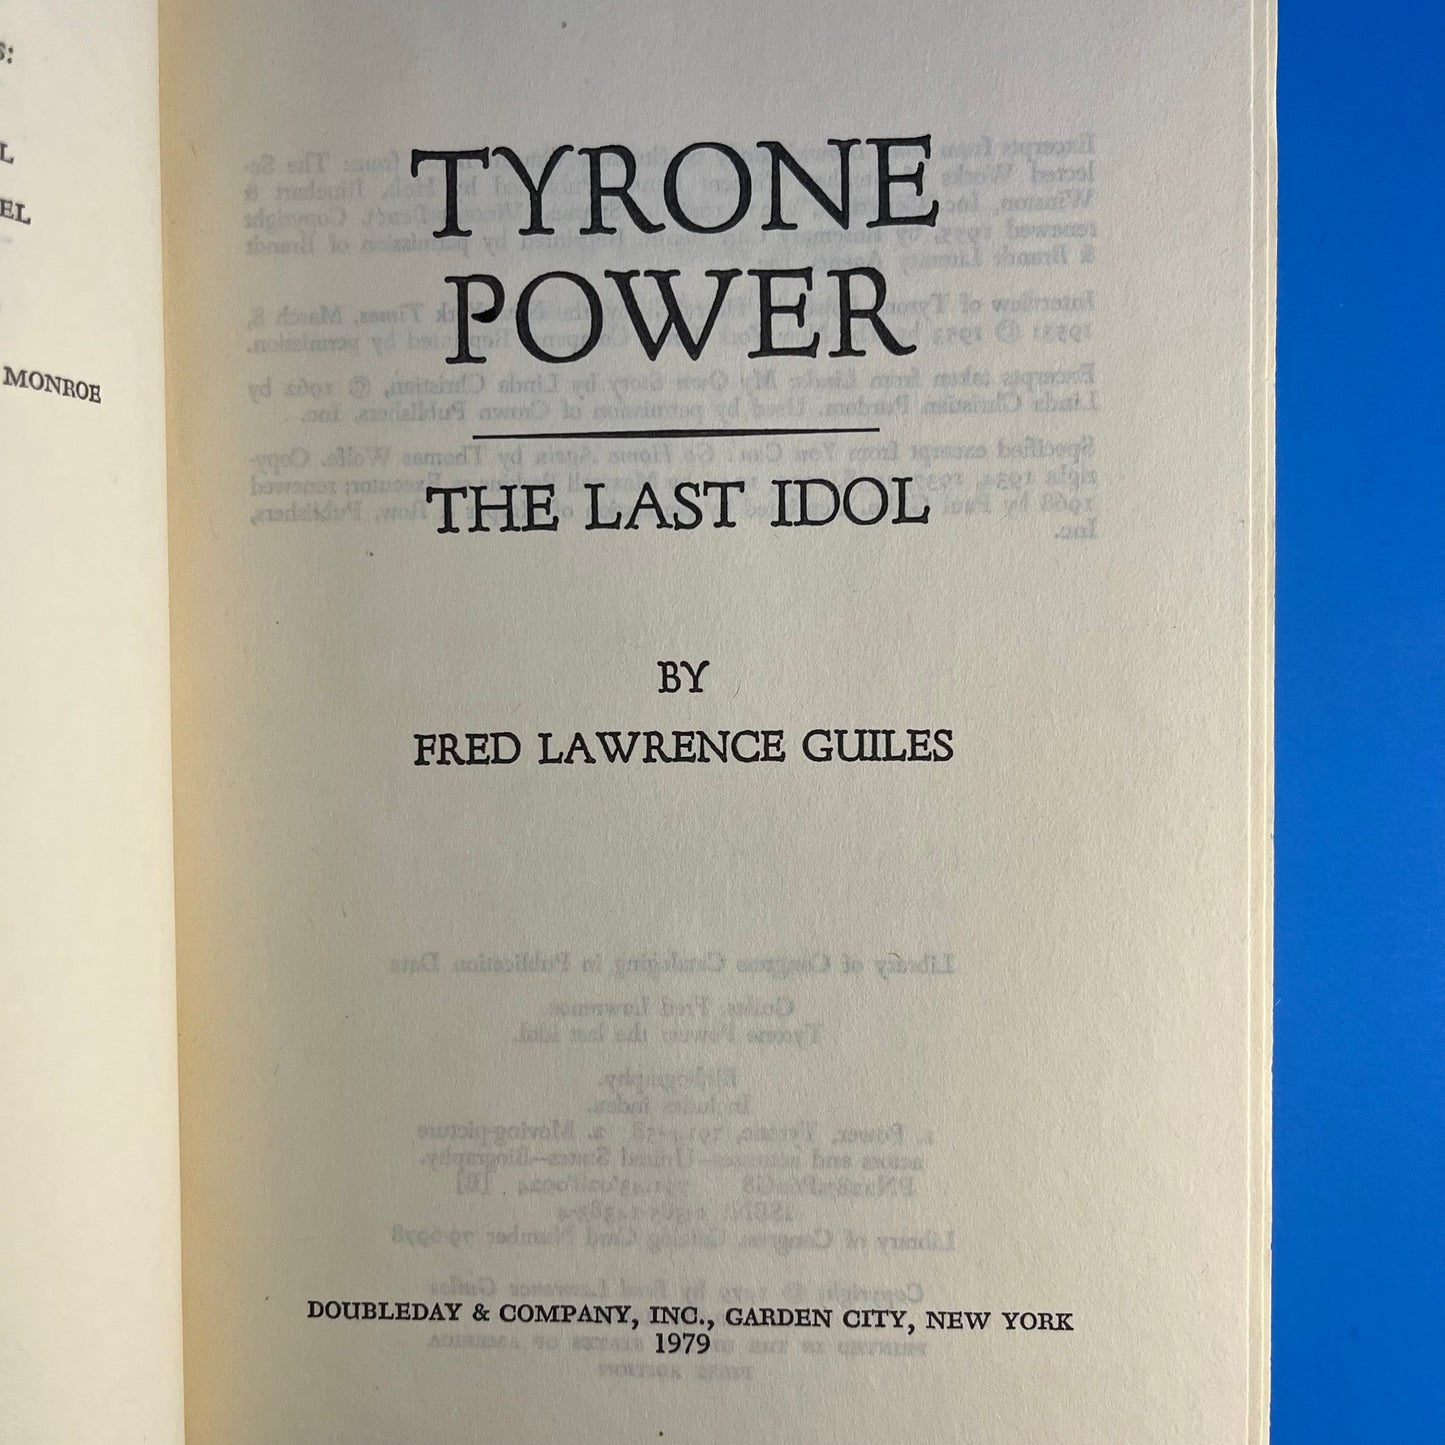 Tyrone Power: The Last Idol